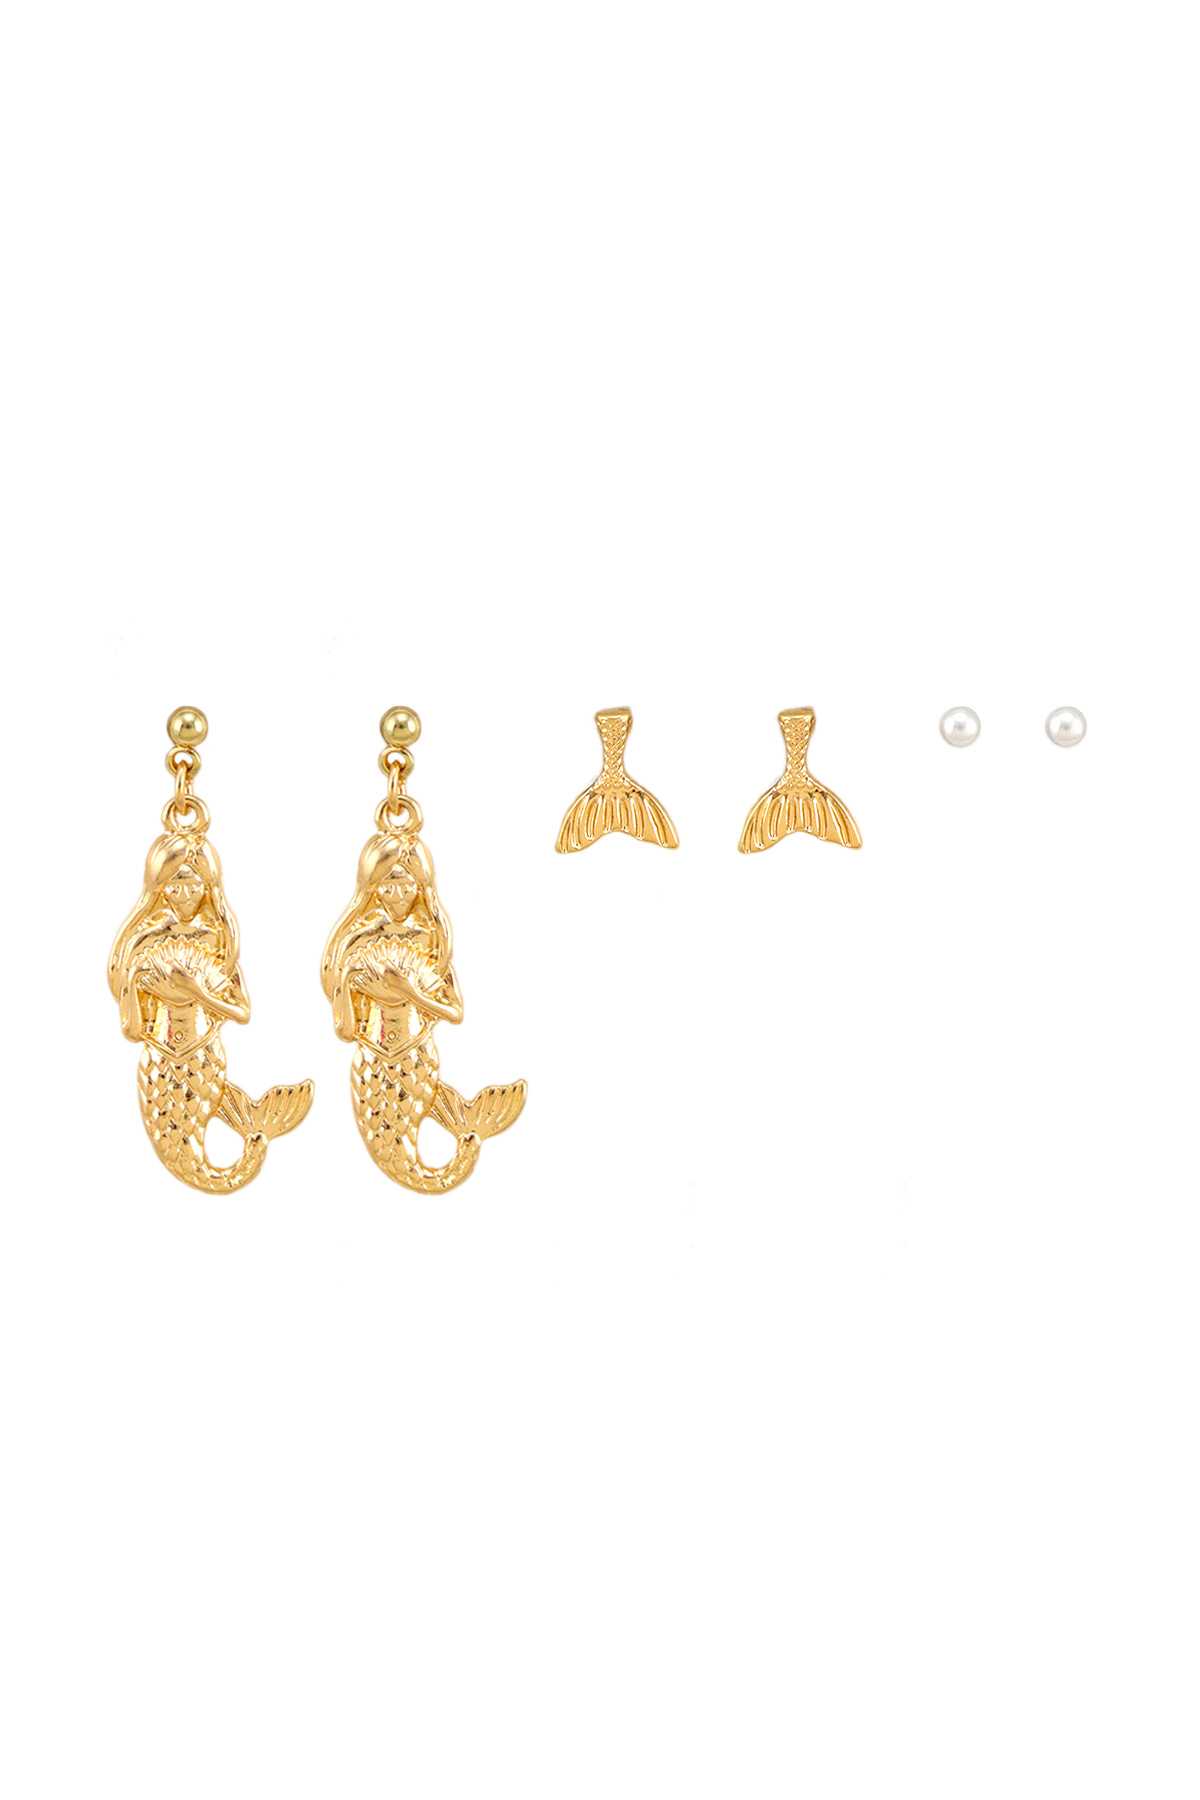 3 Pairs Mermaid and Mermaid Tail Earring Set